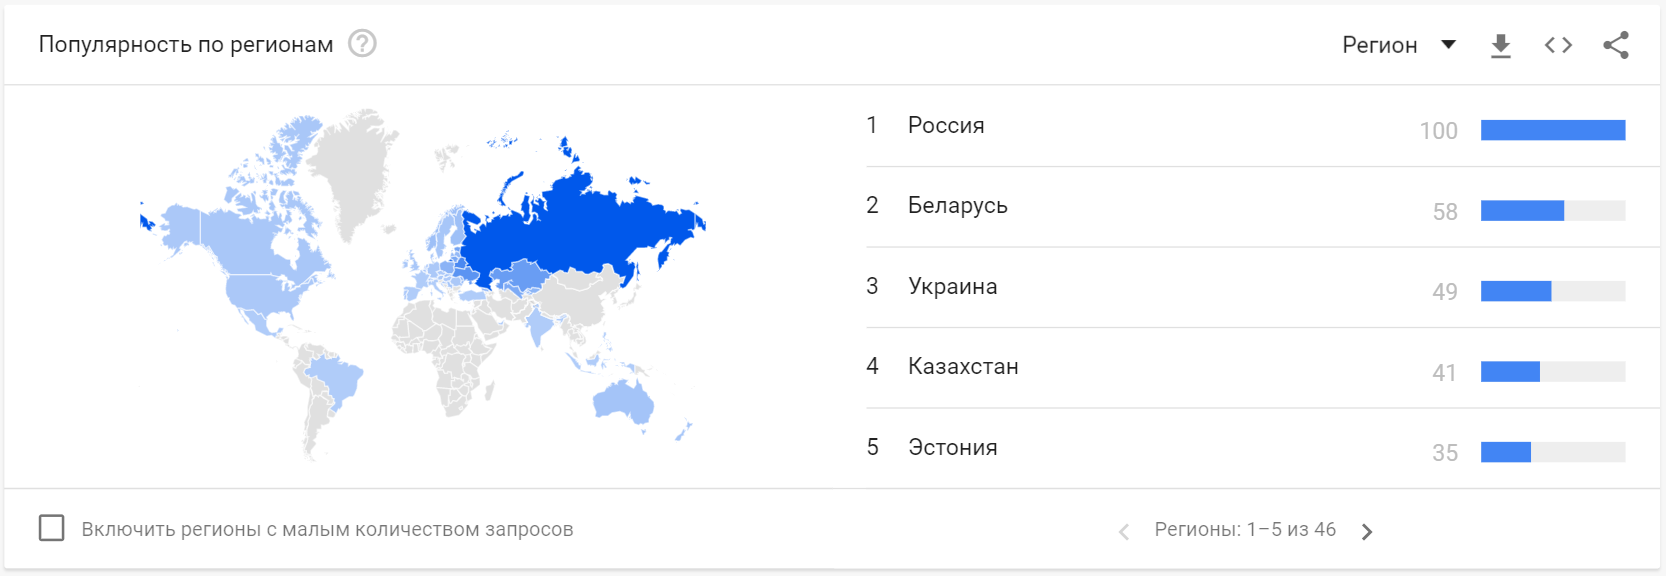 Продвижение российских. Гугл популярные запросы по странам мира. Самые популярные запросы гугл в России 2020. Самые популярные запросы Узбекистана. Популярность разных запросов в регионах России.